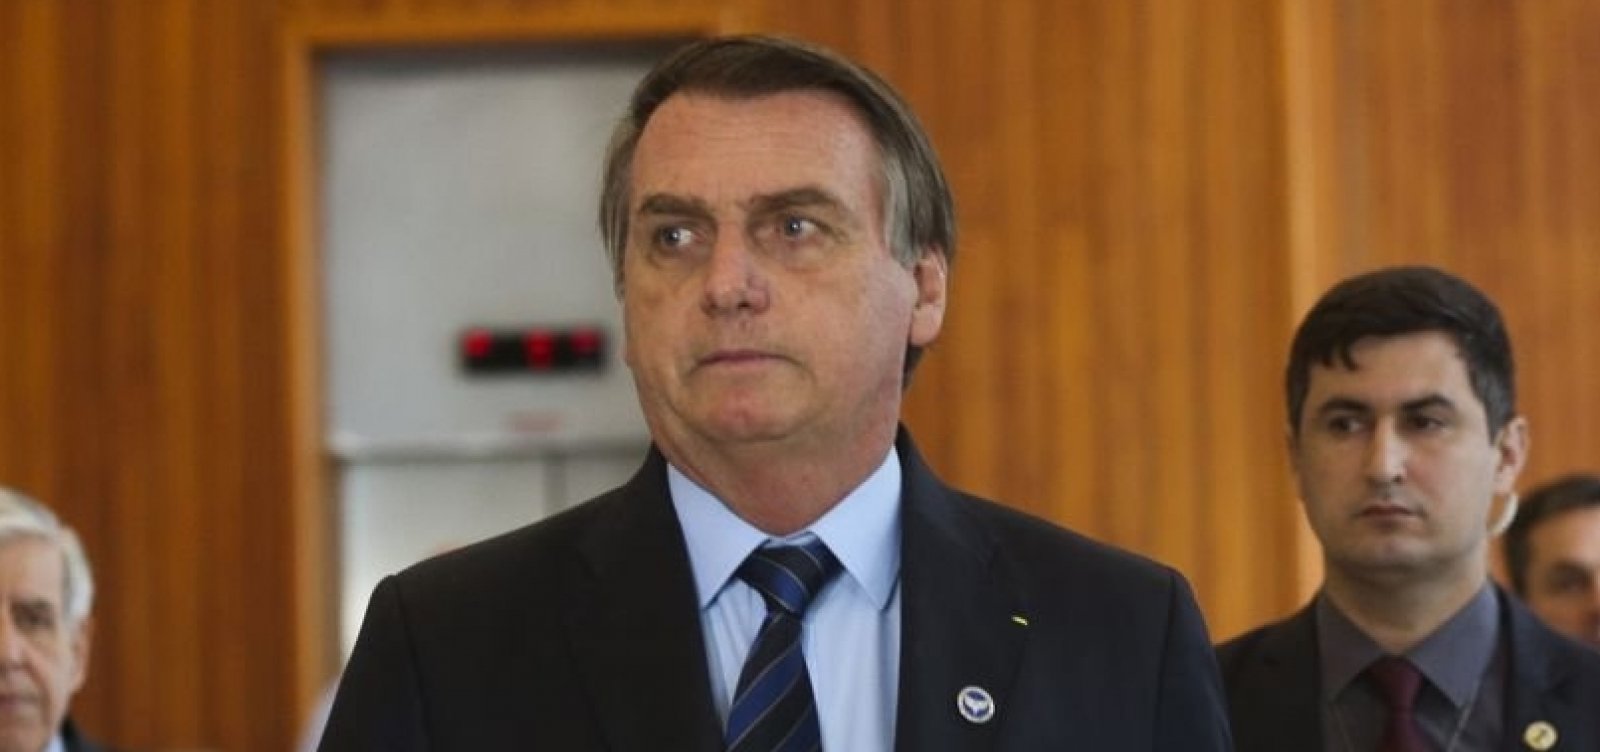 'Eu amo o Nordeste', diz Bolsonaro após polêmica com governadores nordestinos